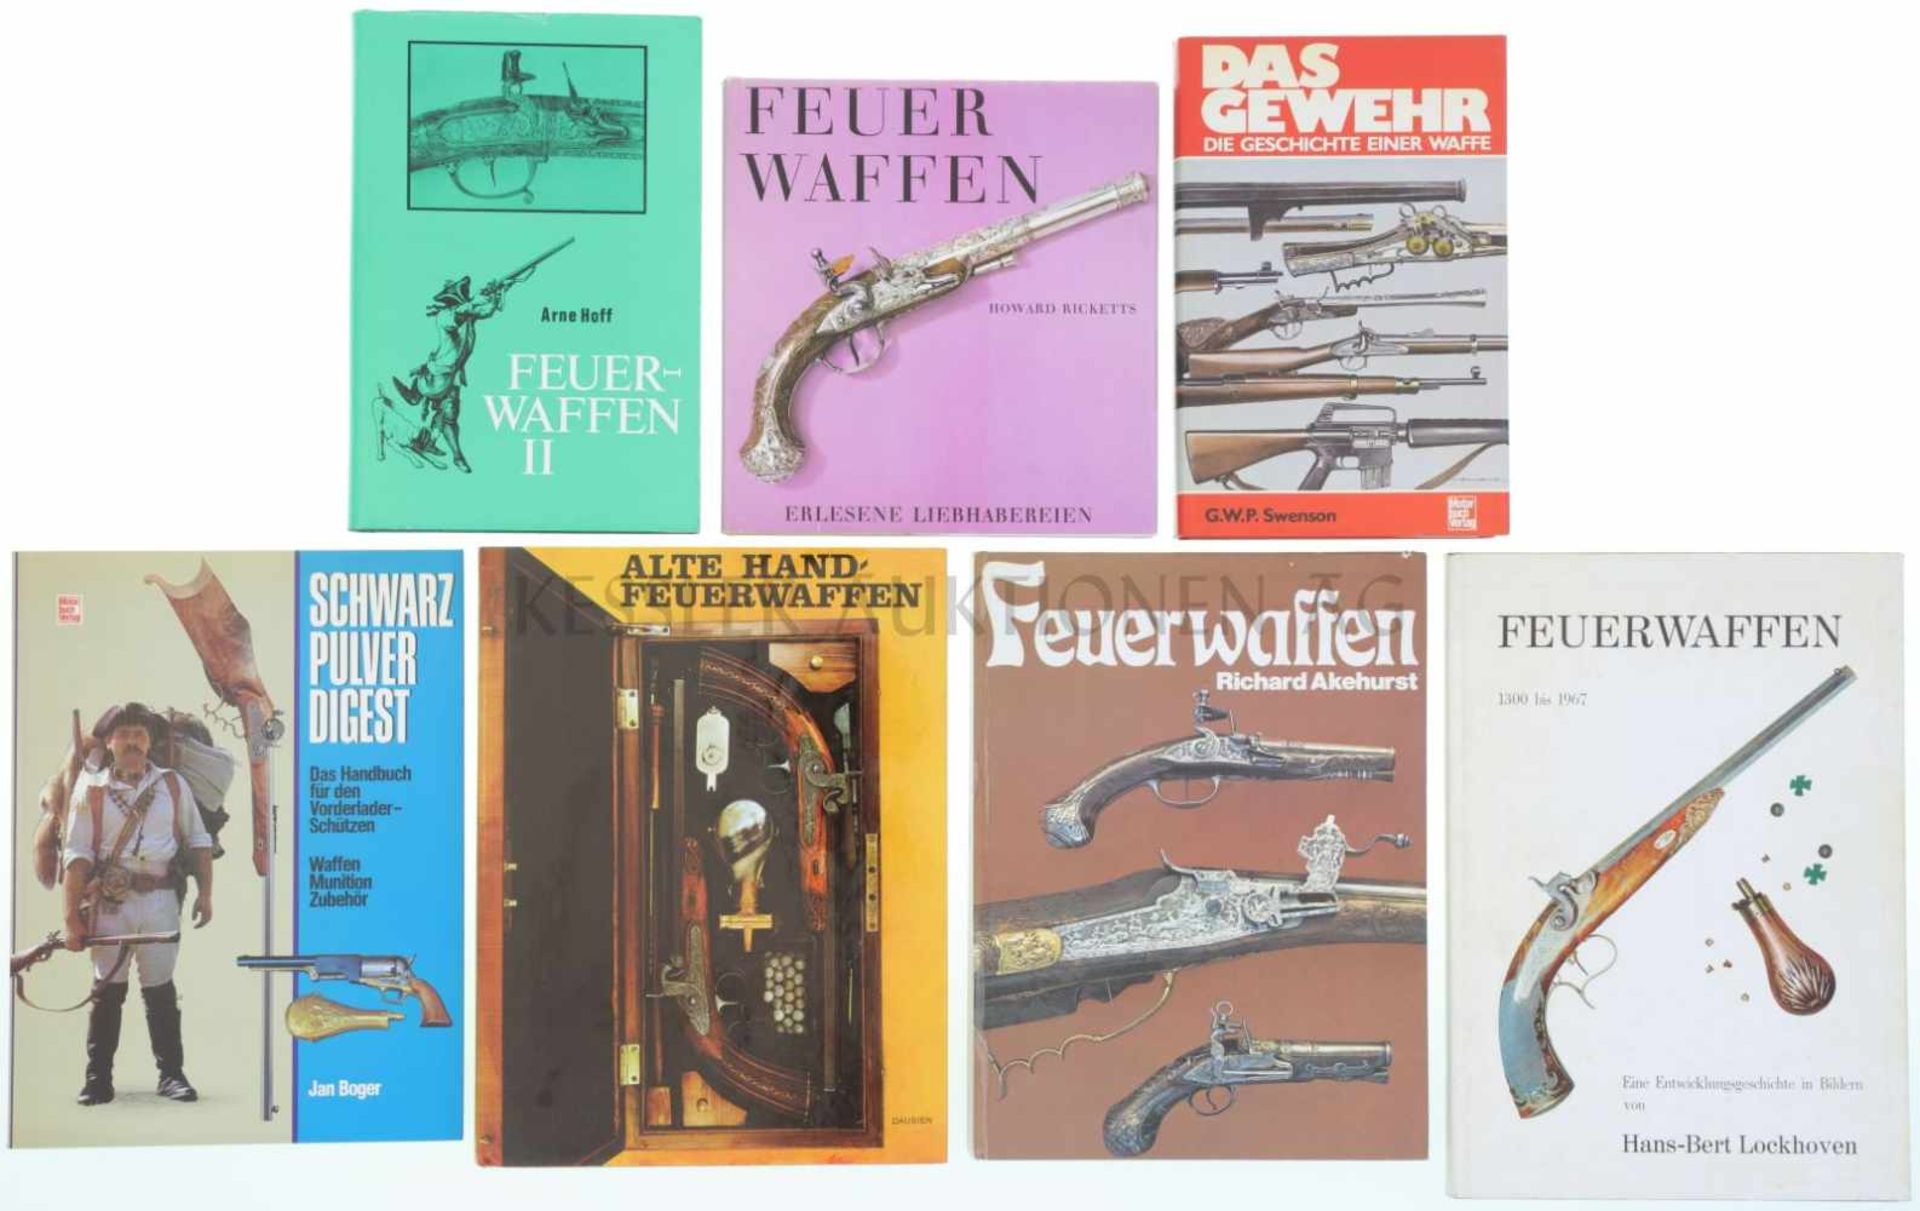 Konvolut von 7 Büchern 1. Das Gewehr, die Geschichte einer Waffe, von G.W.P. Swenson, 2. Feuerwaffen